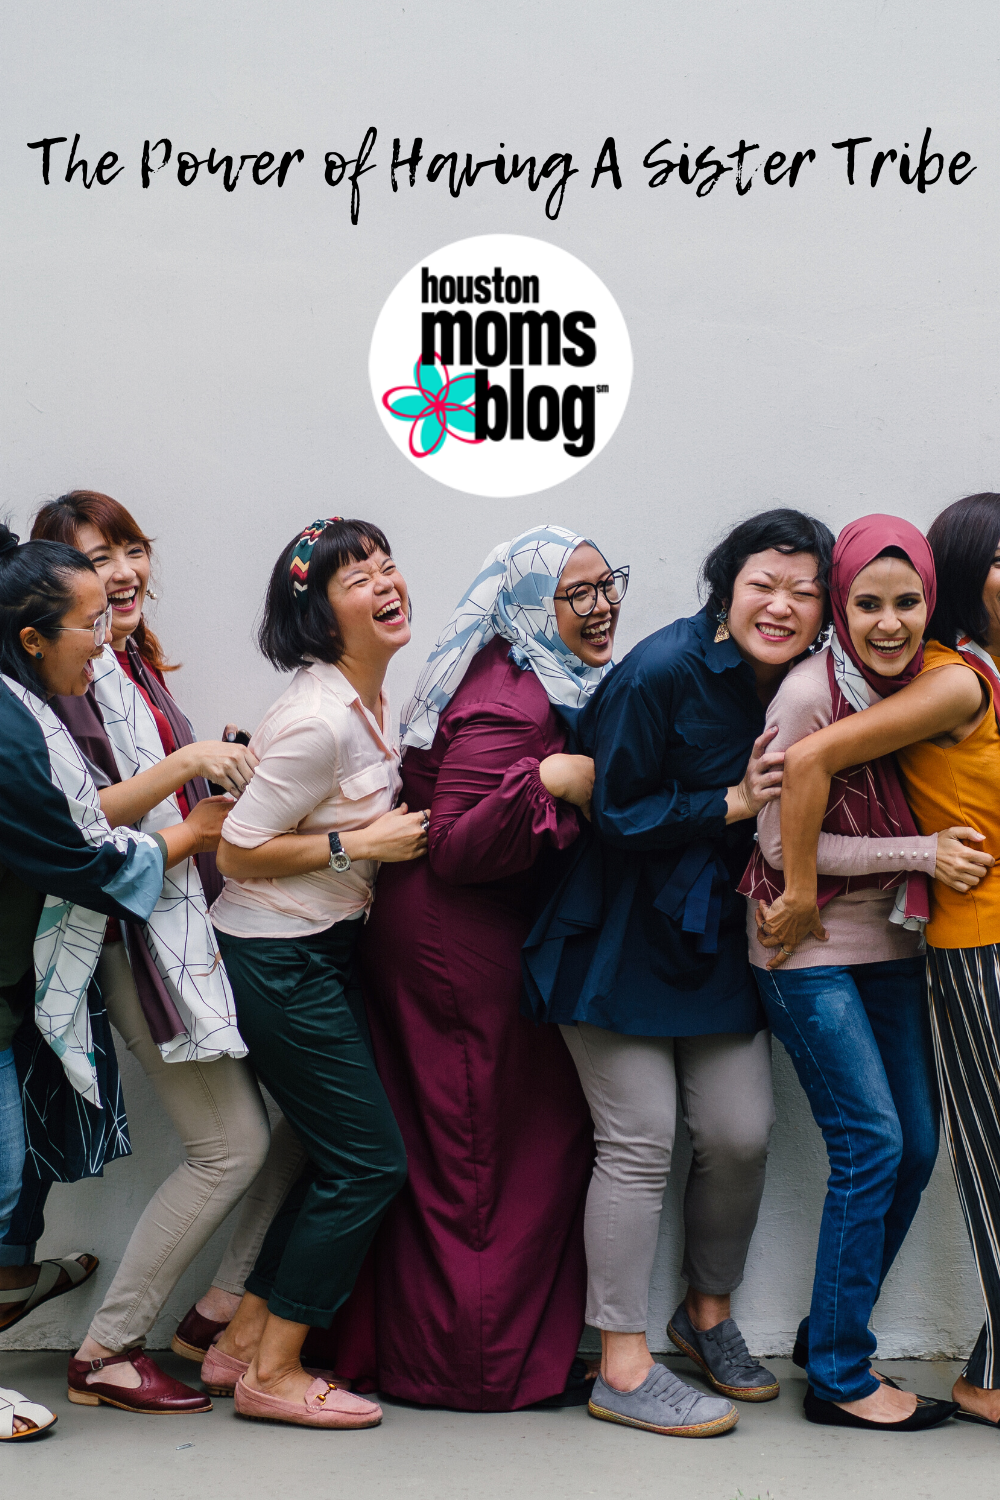 Houston Moms Blog "The Power of Having a Sister Tribe" #houstonmomsblog #momsaroundhouston